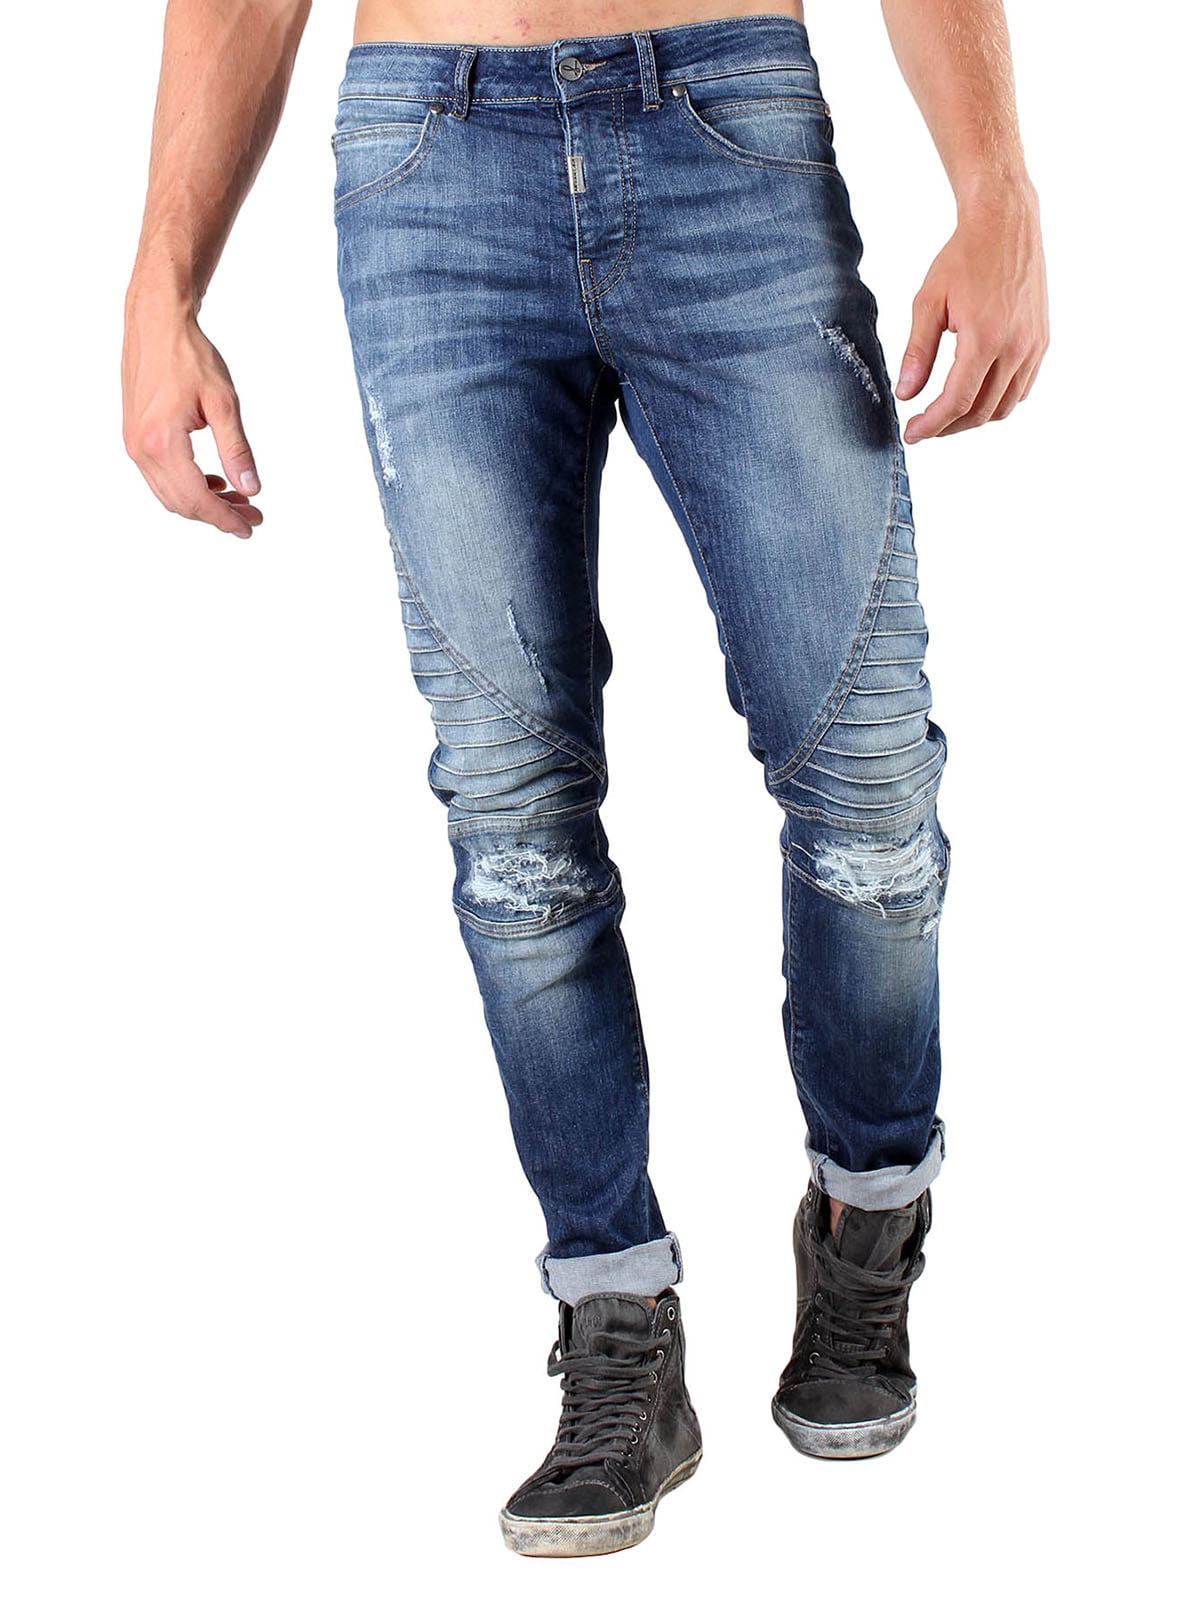 Мужские джинсы виды